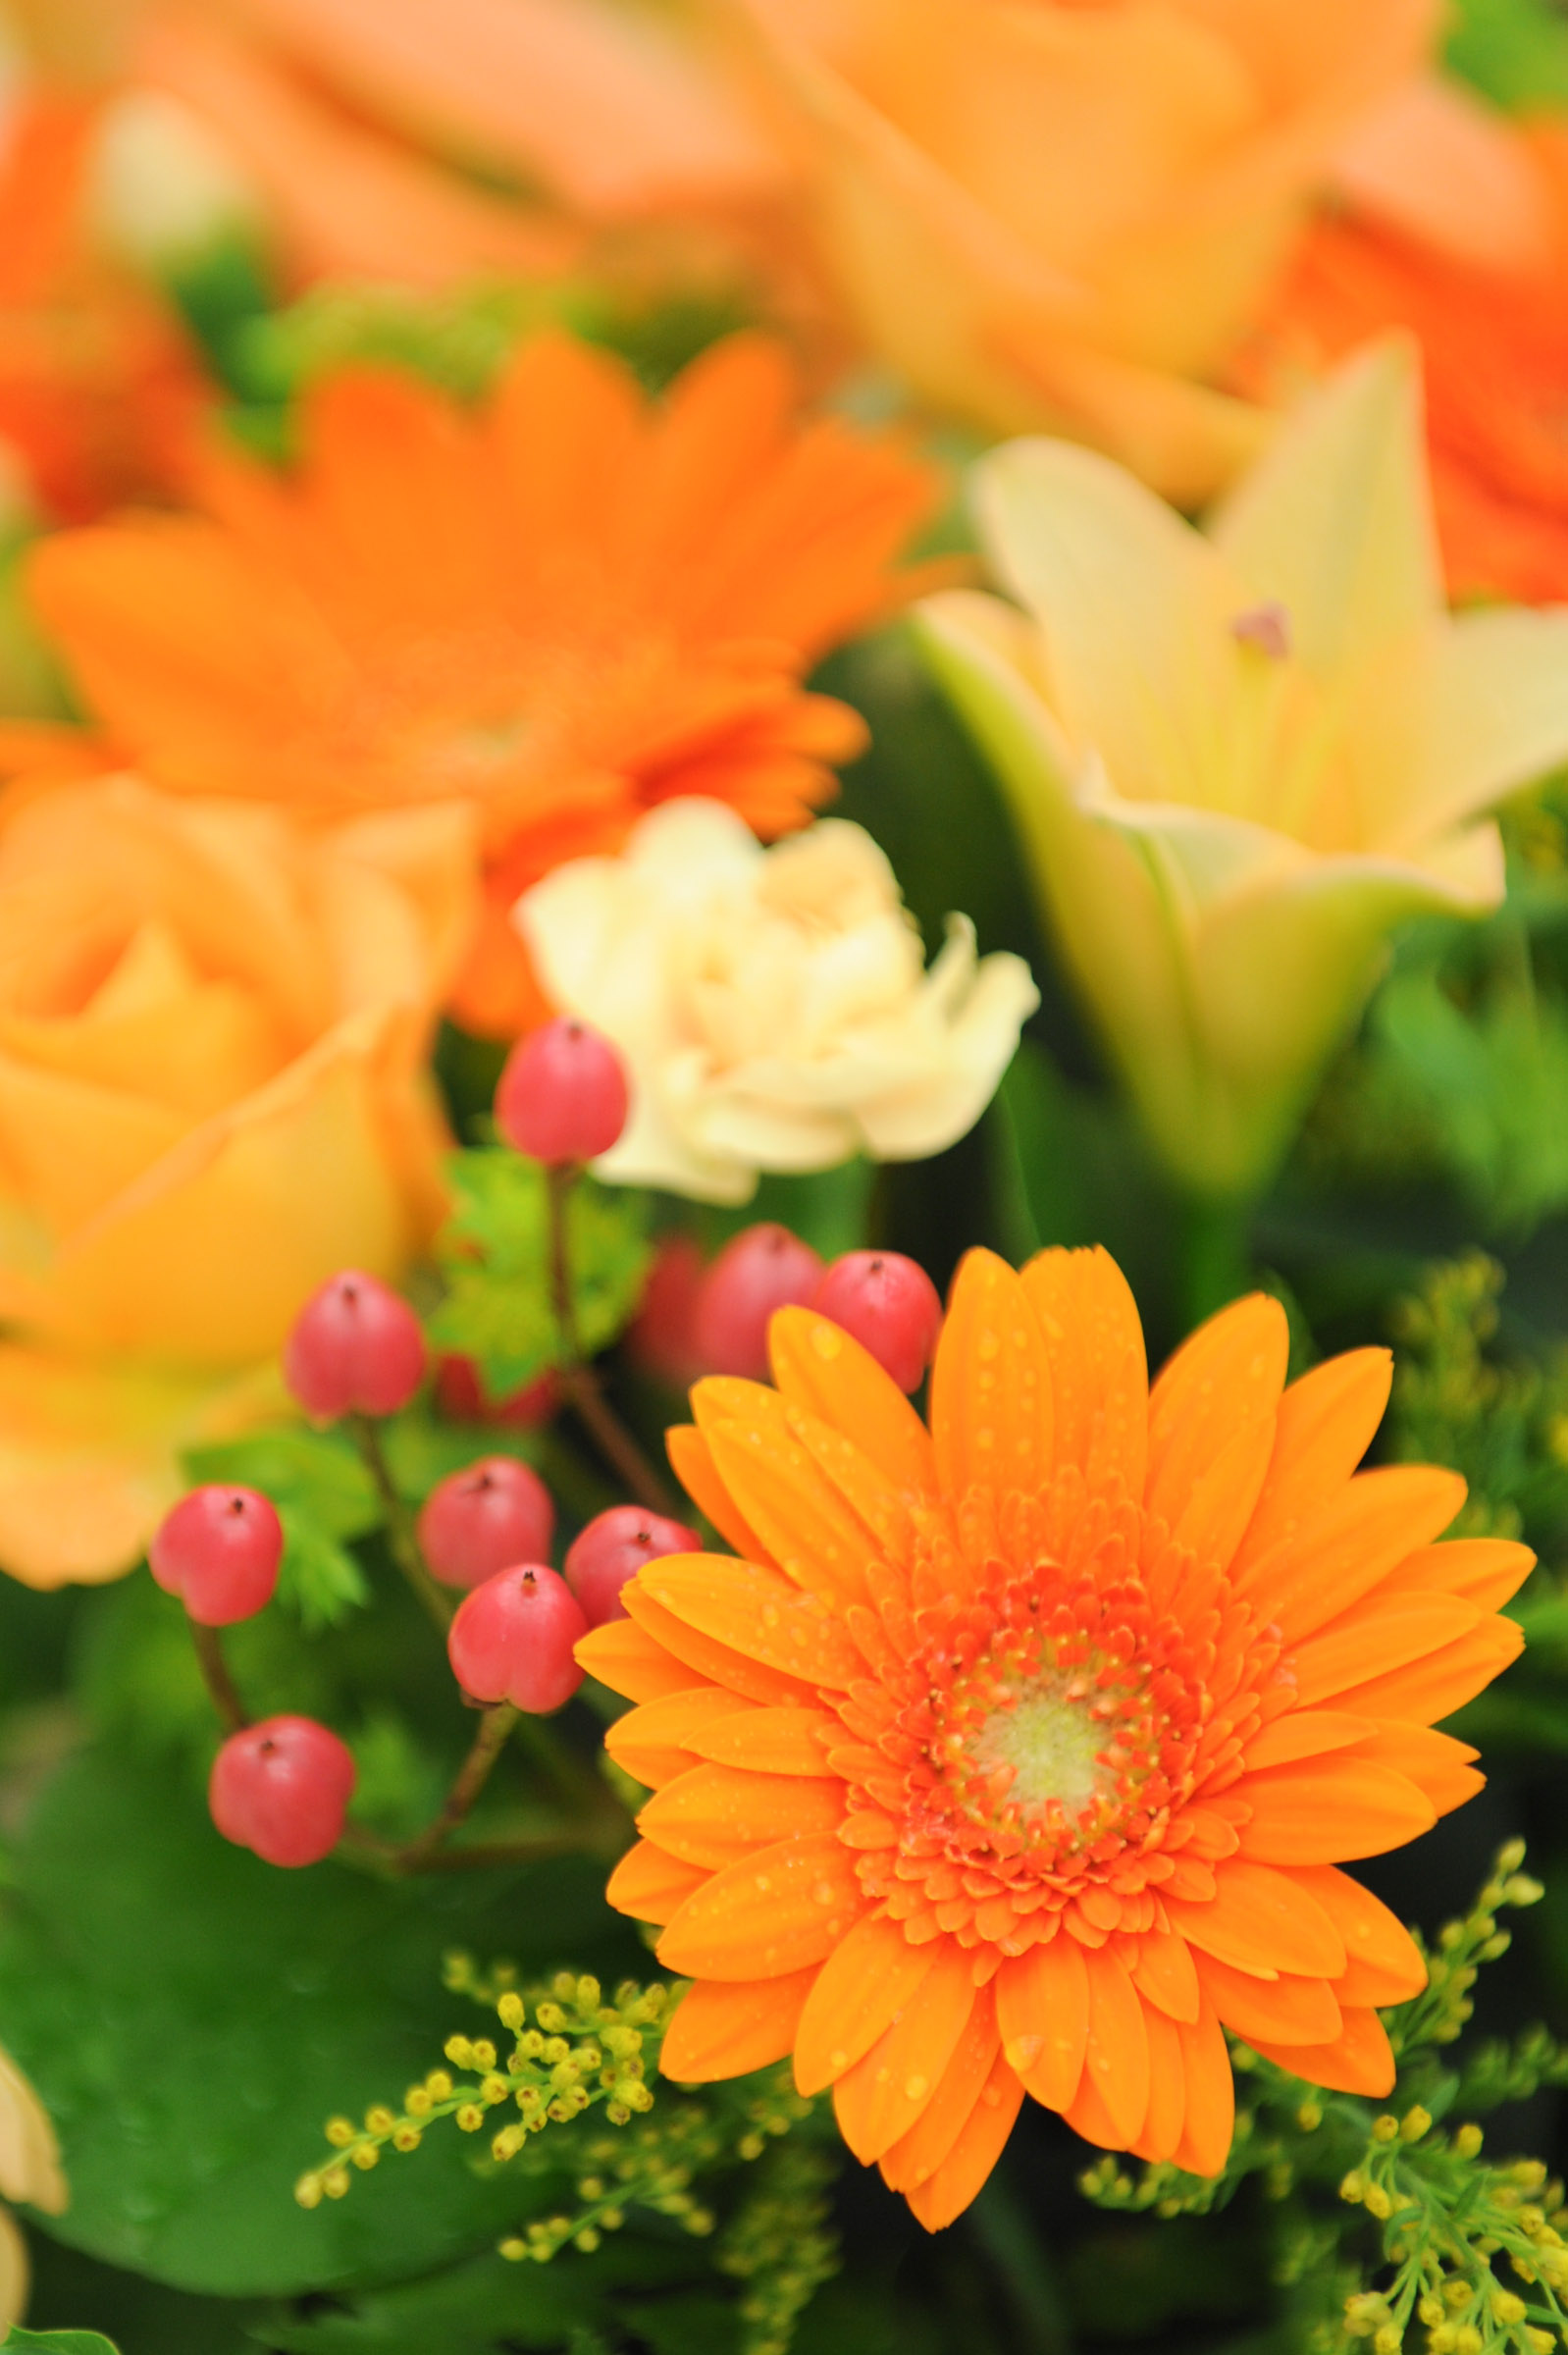 水滴が付いた綺麗なオレンジ色の花と他の花々 Hana 花畑photo フリー 無料 の写真素材 壁紙置き場 オレンジ色の花